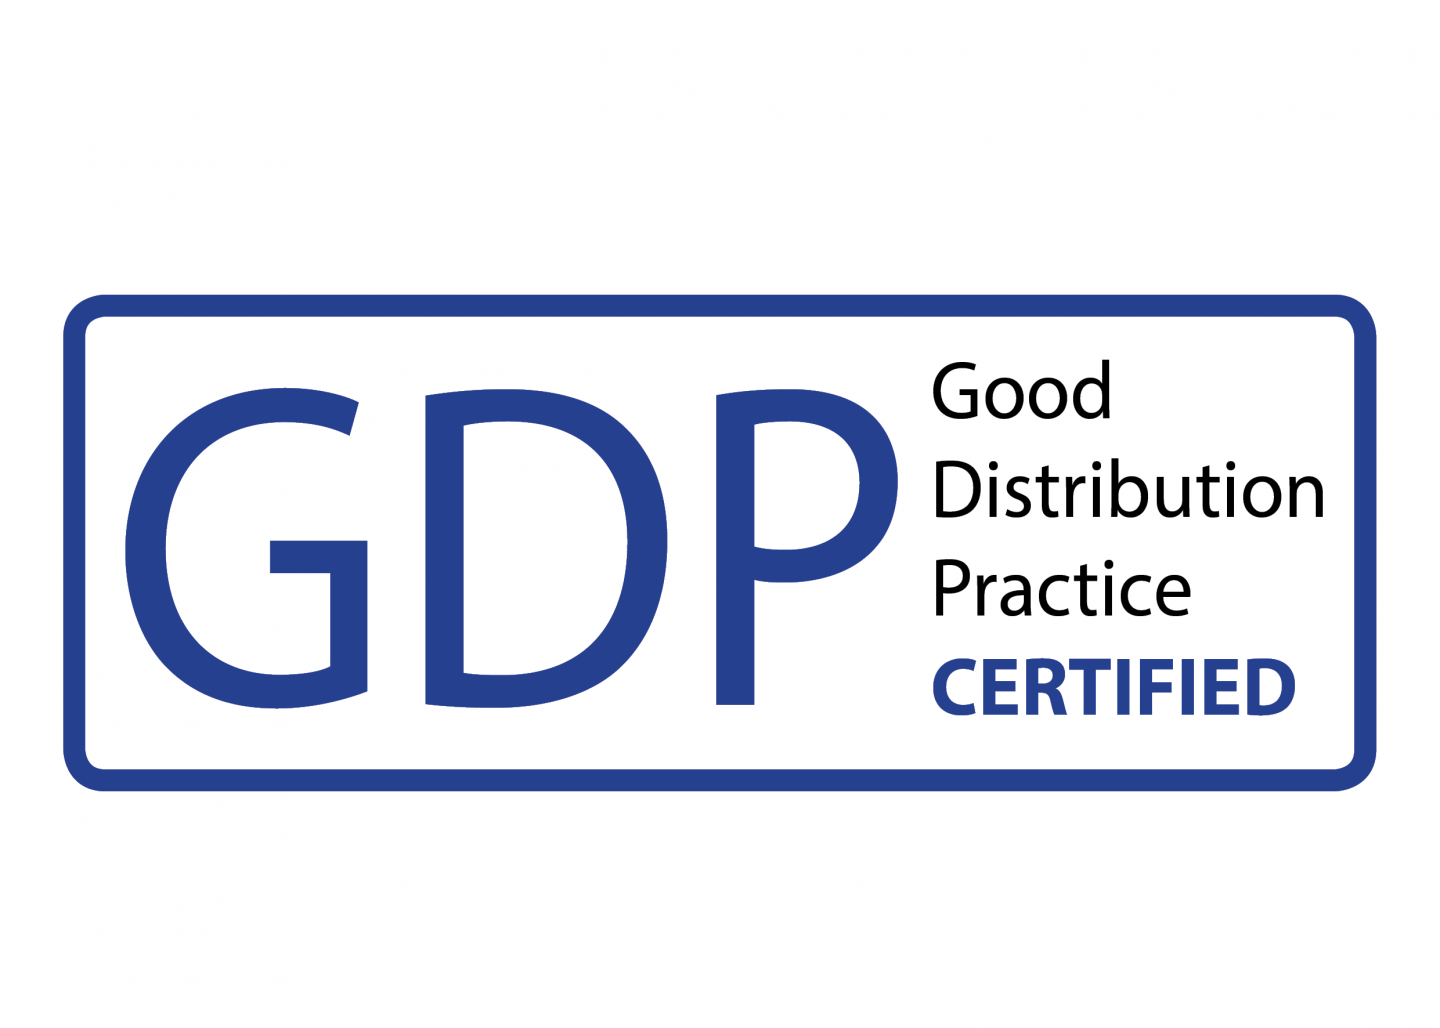 Надлежащая упаковка. GDP стандарт. Надлежащая дистрибьюторская практика GDP. GDP good distribution Practice надлежащая дистрибьюторская практика. Сертификат GDP.